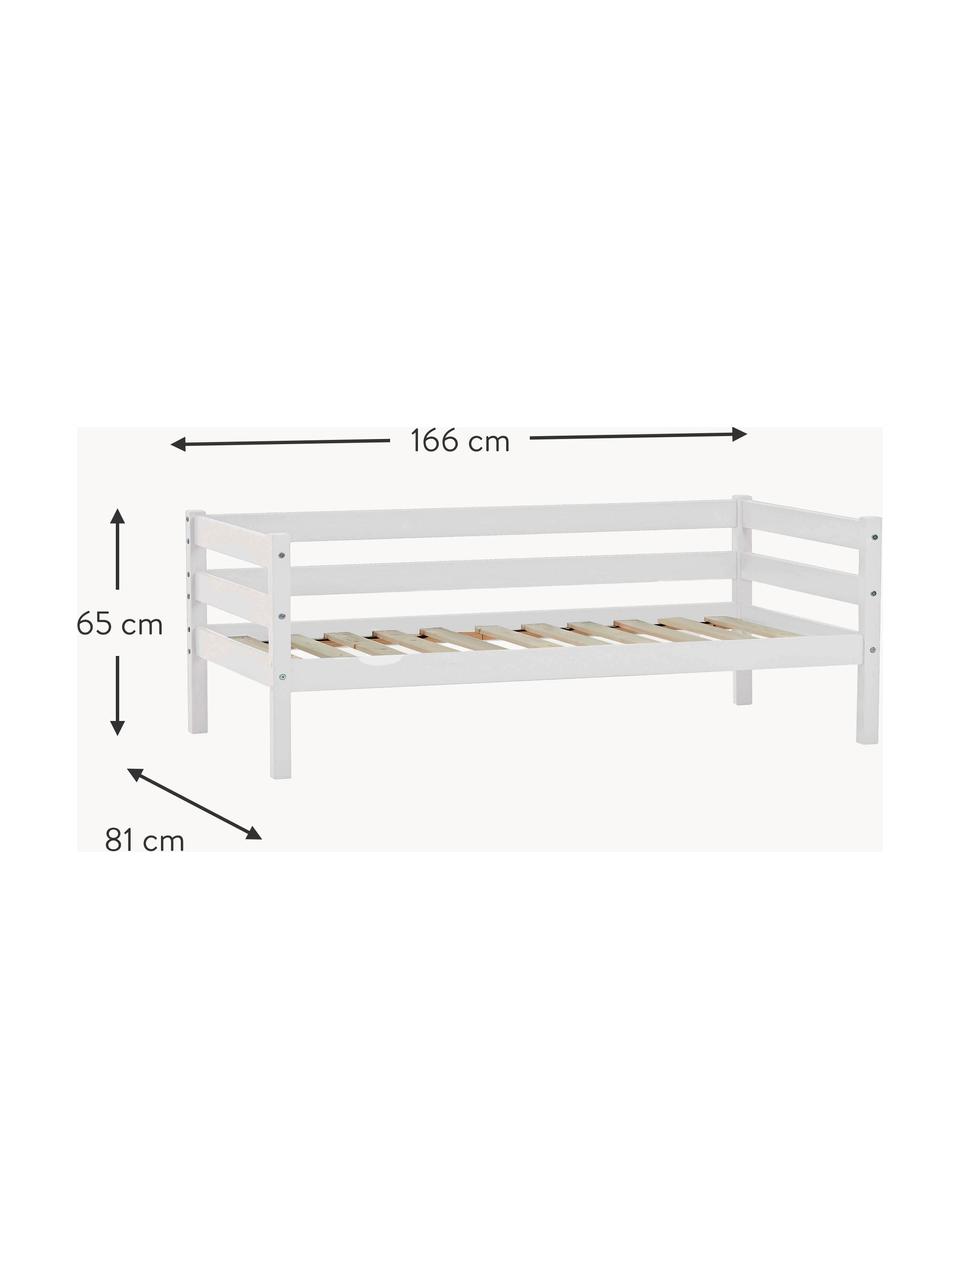 Dětská postel z borovicového dřeva Eco Comfort, 70 x 160 cm, Masivní borovicové dřevo, certifikace FSC, překližka, Borovicové dřevo, lakované bílou barvou, Š 70 cm, D 160 cm